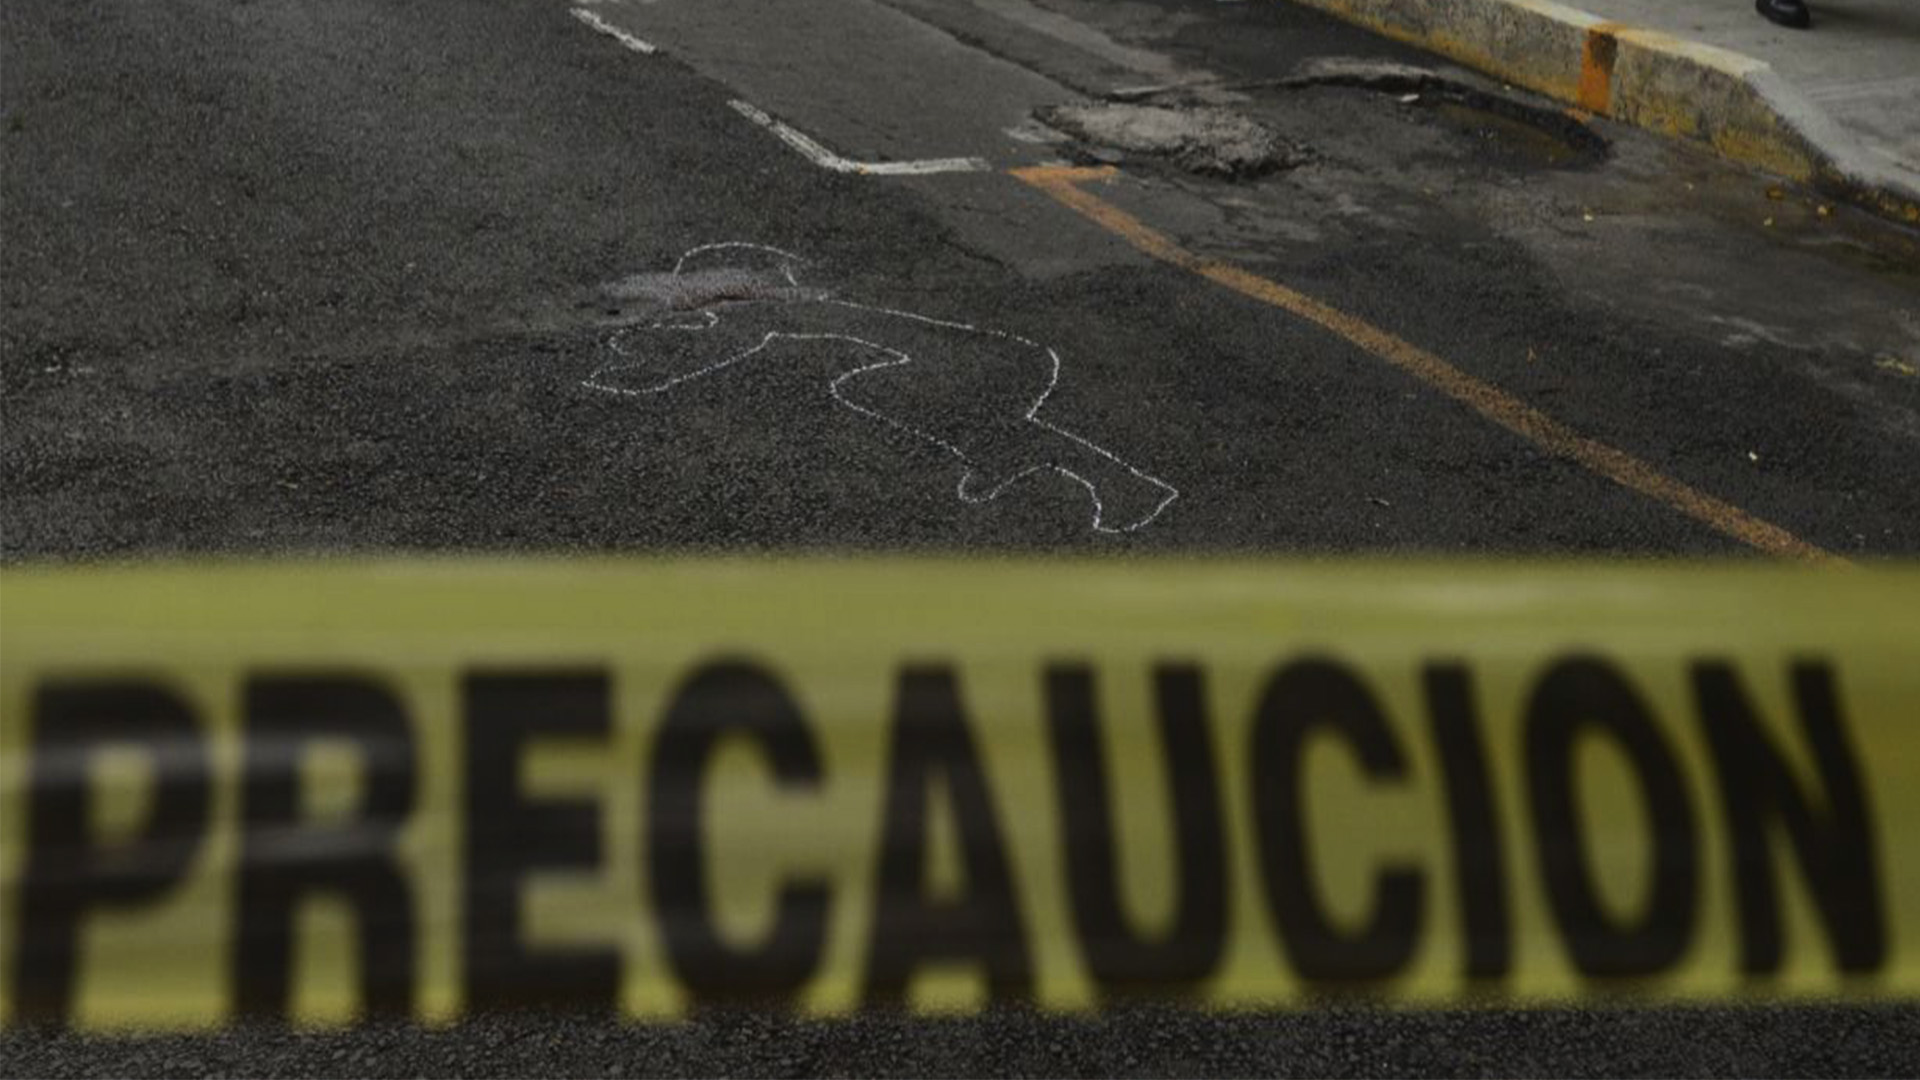 Imagen de referencia. Aumentaron los homicidios en Bogotá en julio del 2021 - Foto: Cuartoscuro